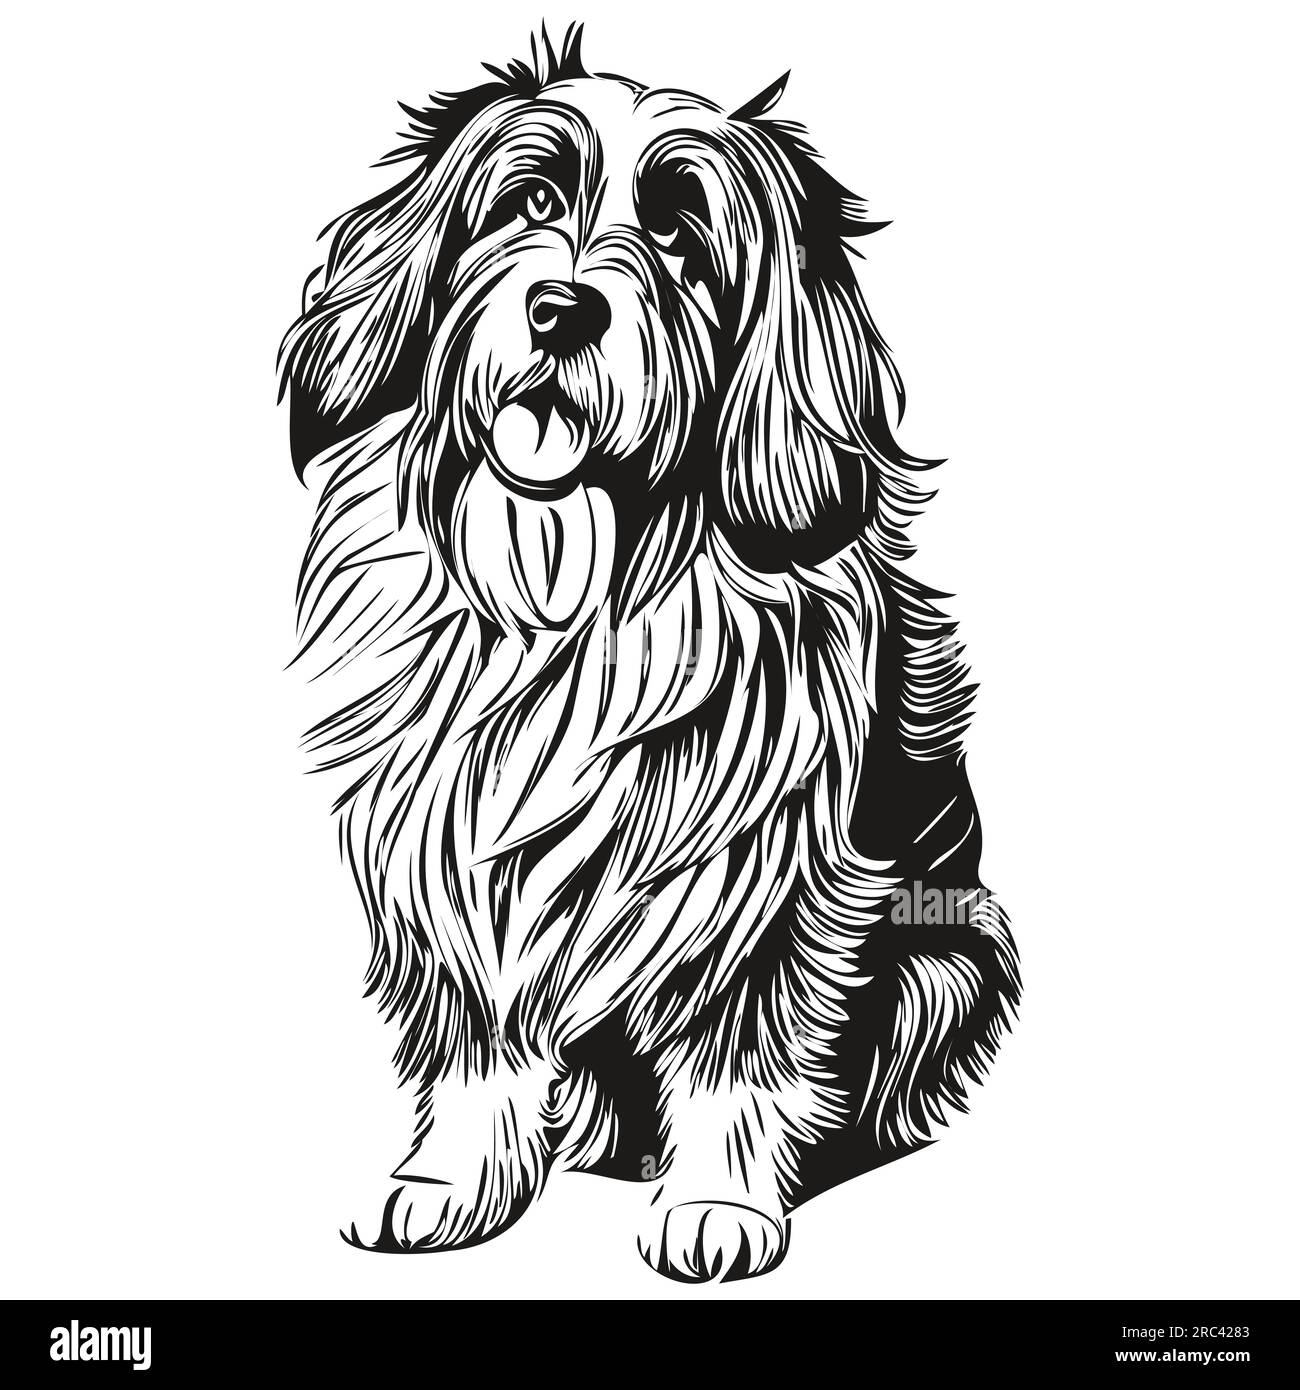 Dessin au trait de race de chien Barbared Collie, clip art animal dessin à la main vecteur noir et blanc silhouette réaliste d'animal de compagnie Illustration de Vecteur